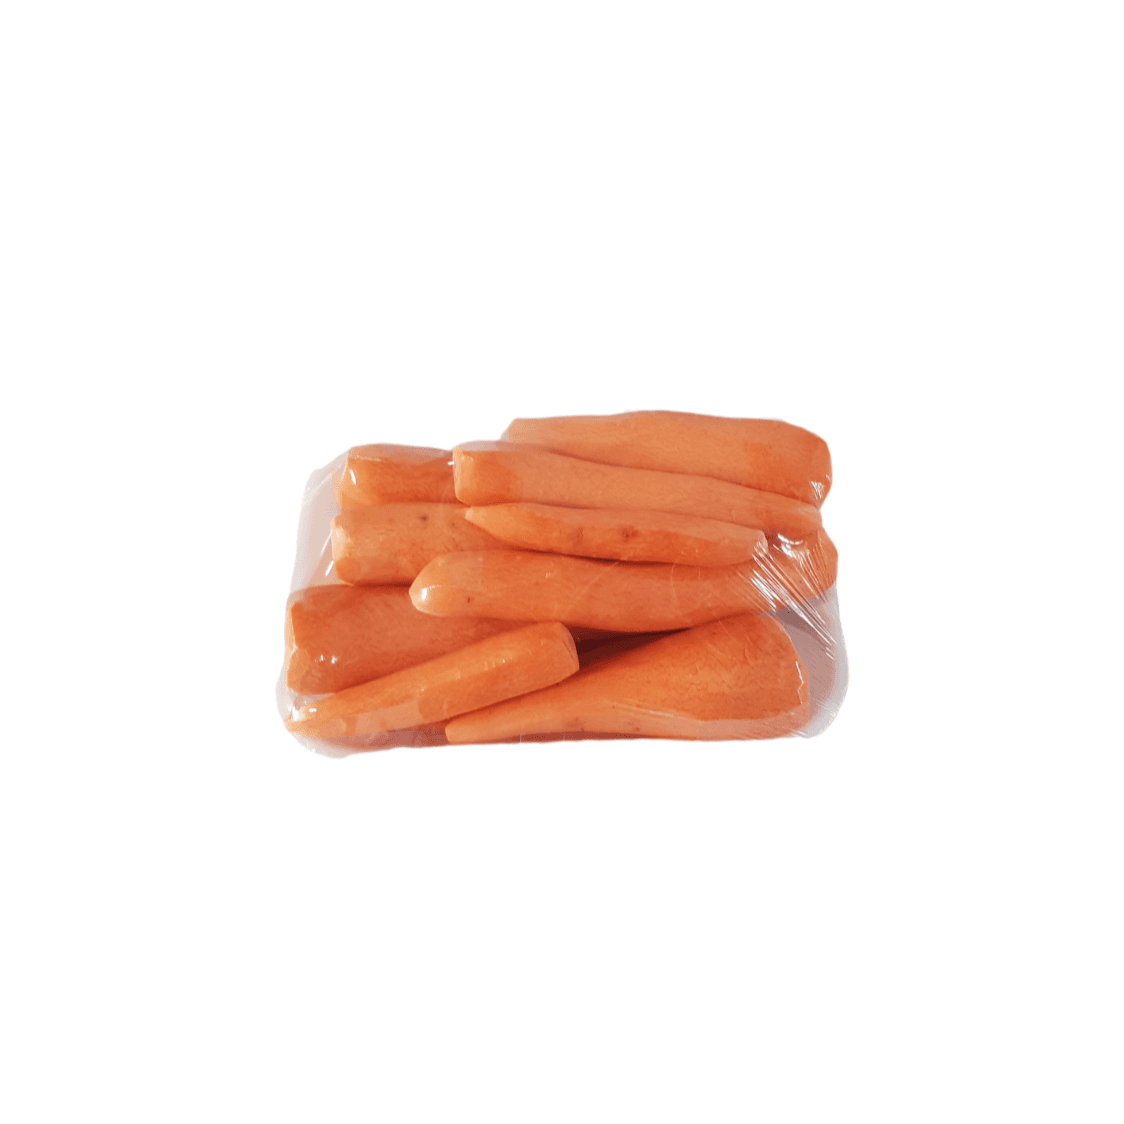 Zanahoria entera pelada (1 kg / 2.2 lb)